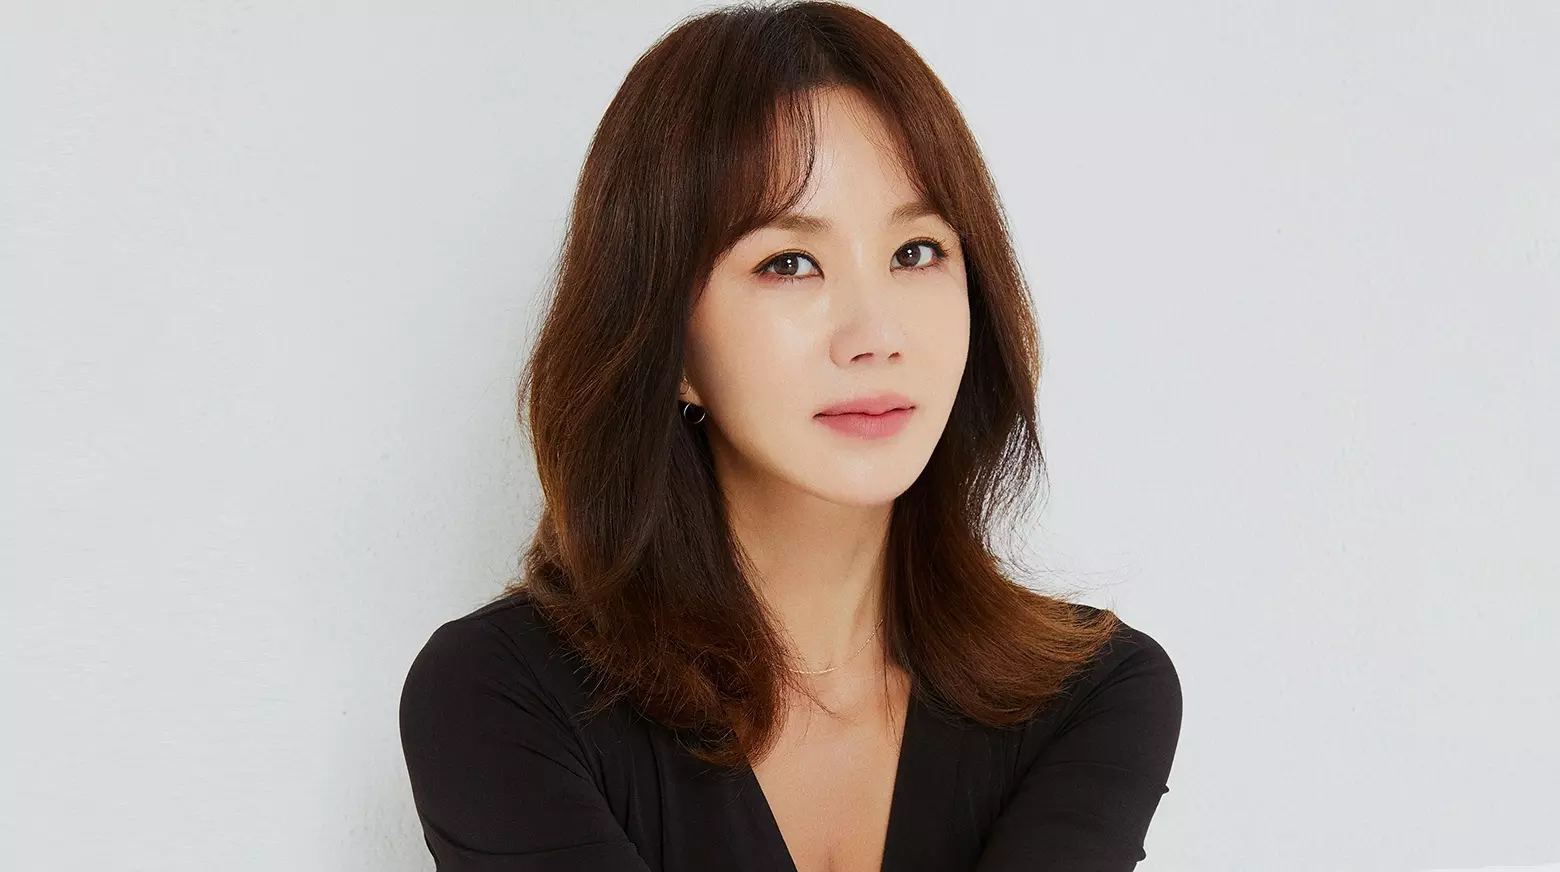 Masuk Nominasi Best Actress, Ini Profil & Fakta Uhm Jung Hwa